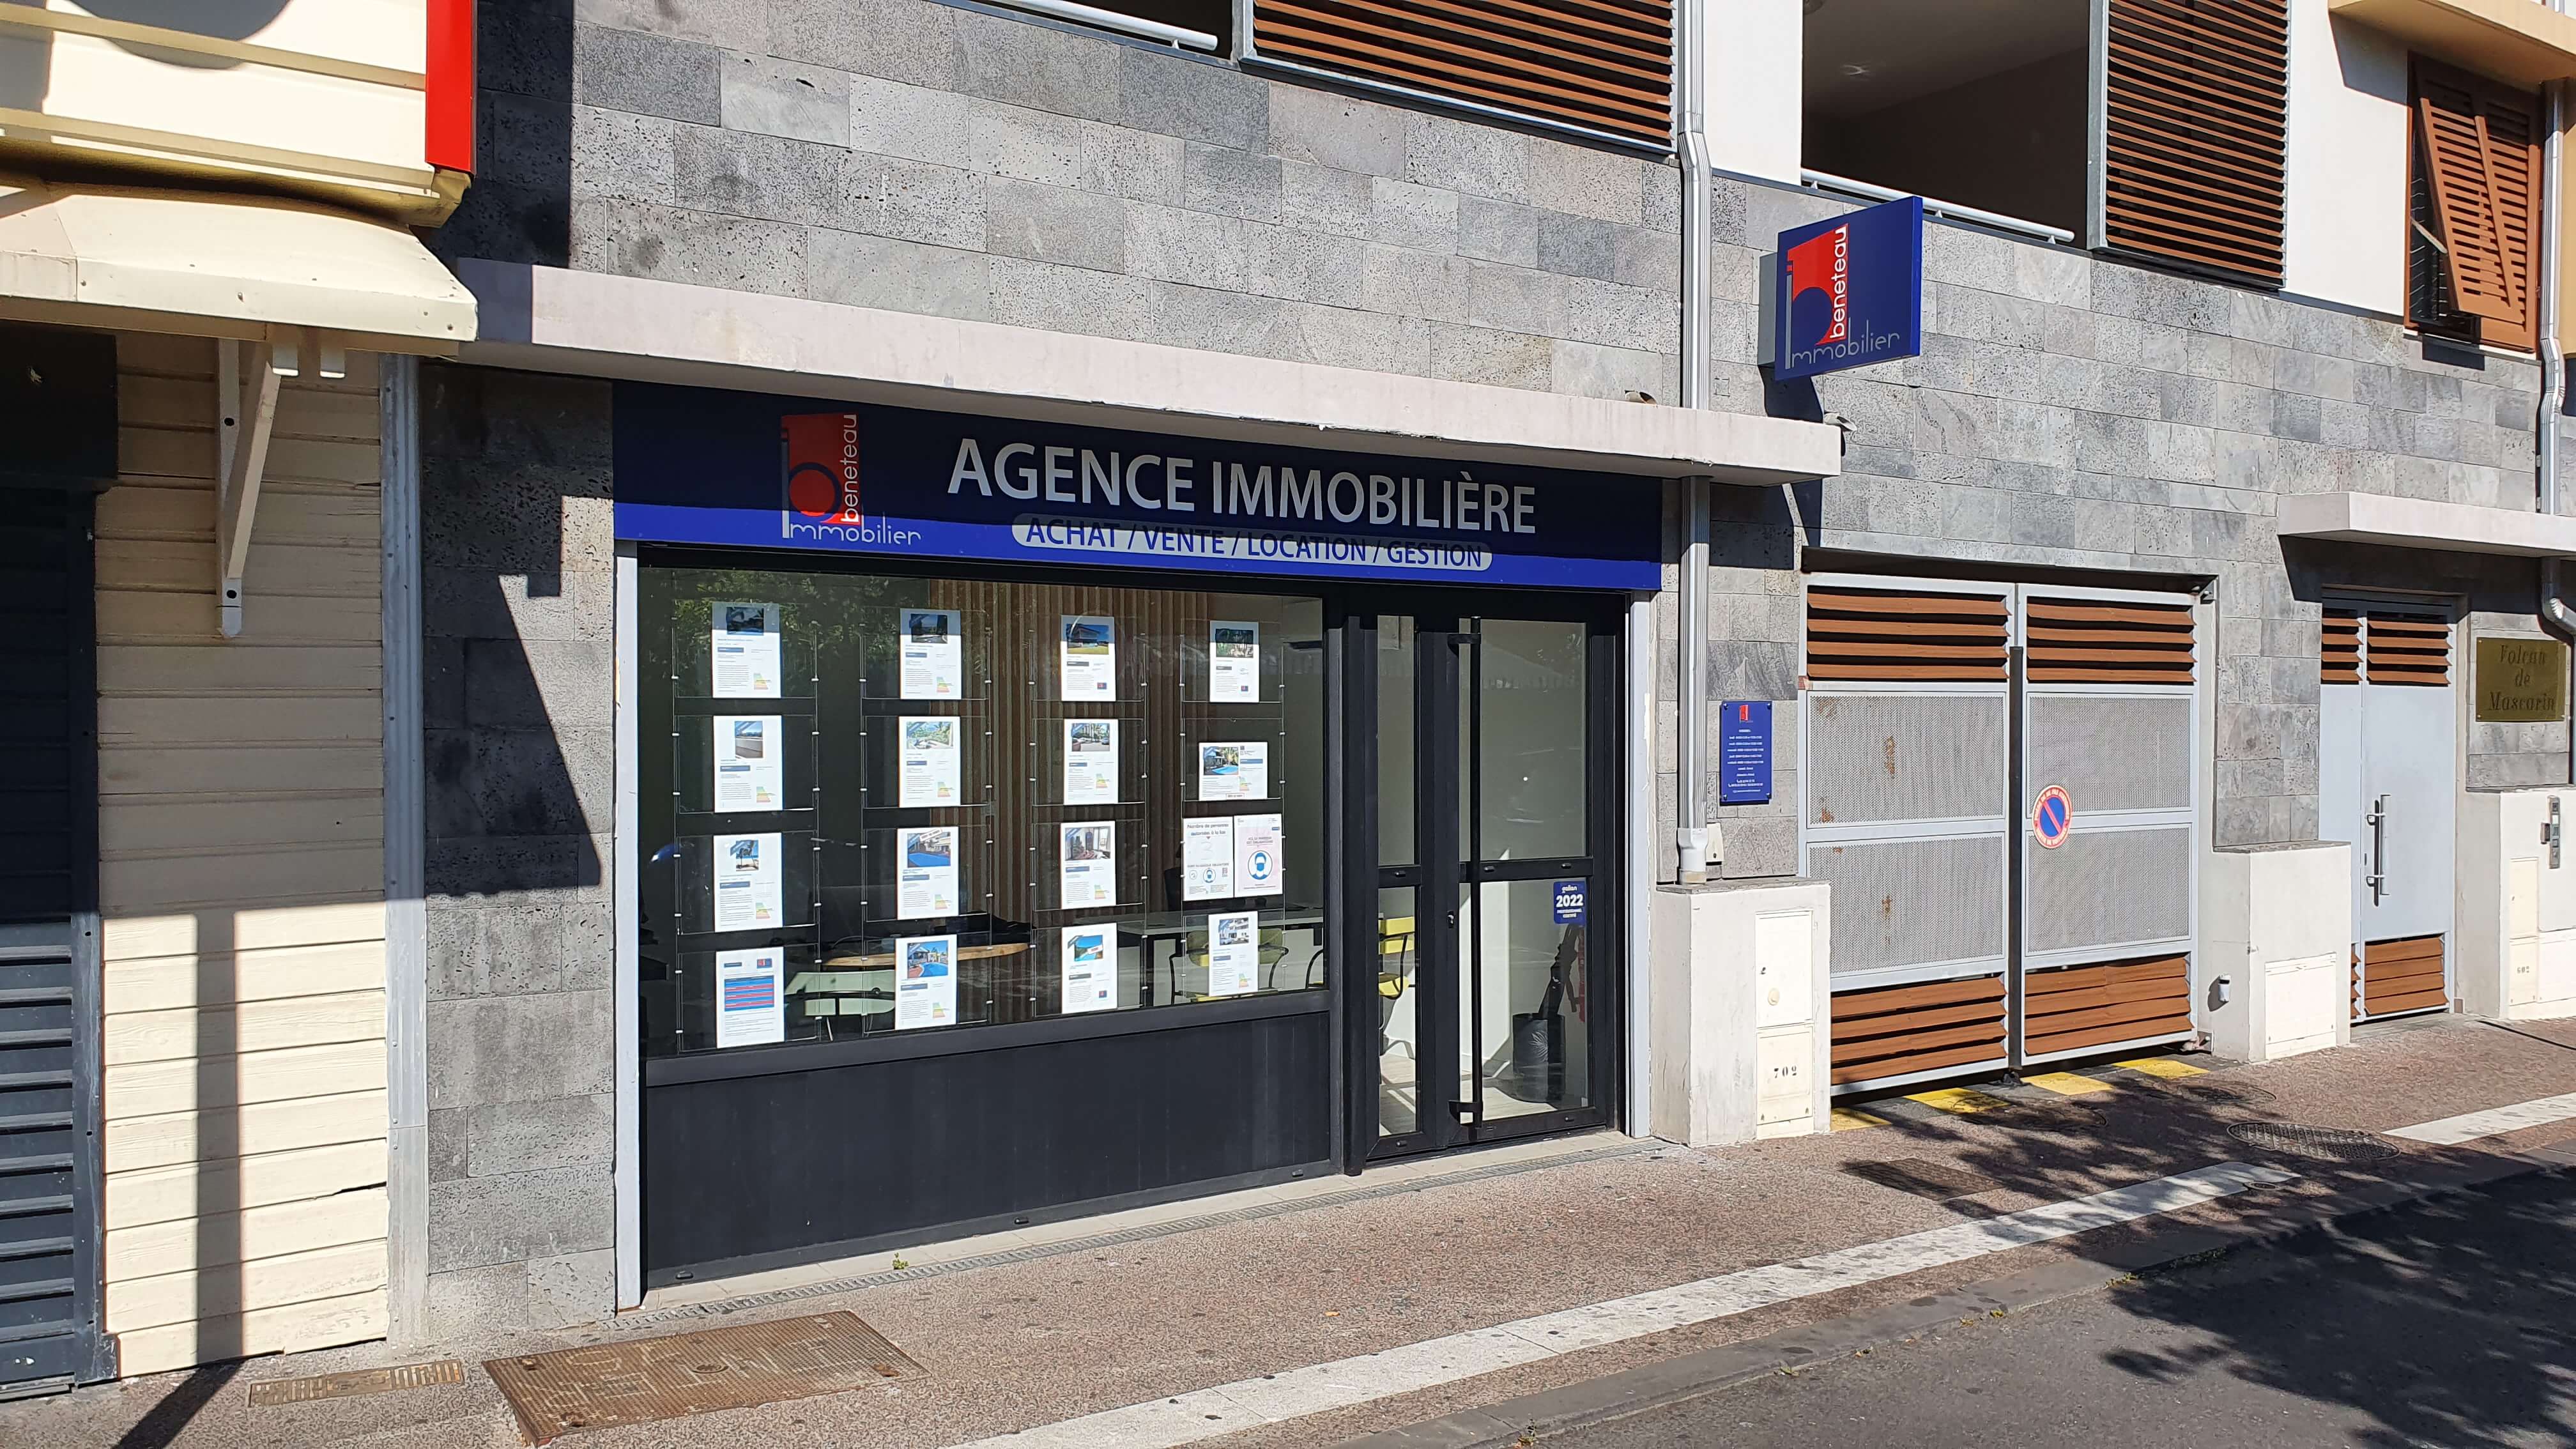 Alter Immobilier - Agence immobilière sur la côte ouest de La Réunion